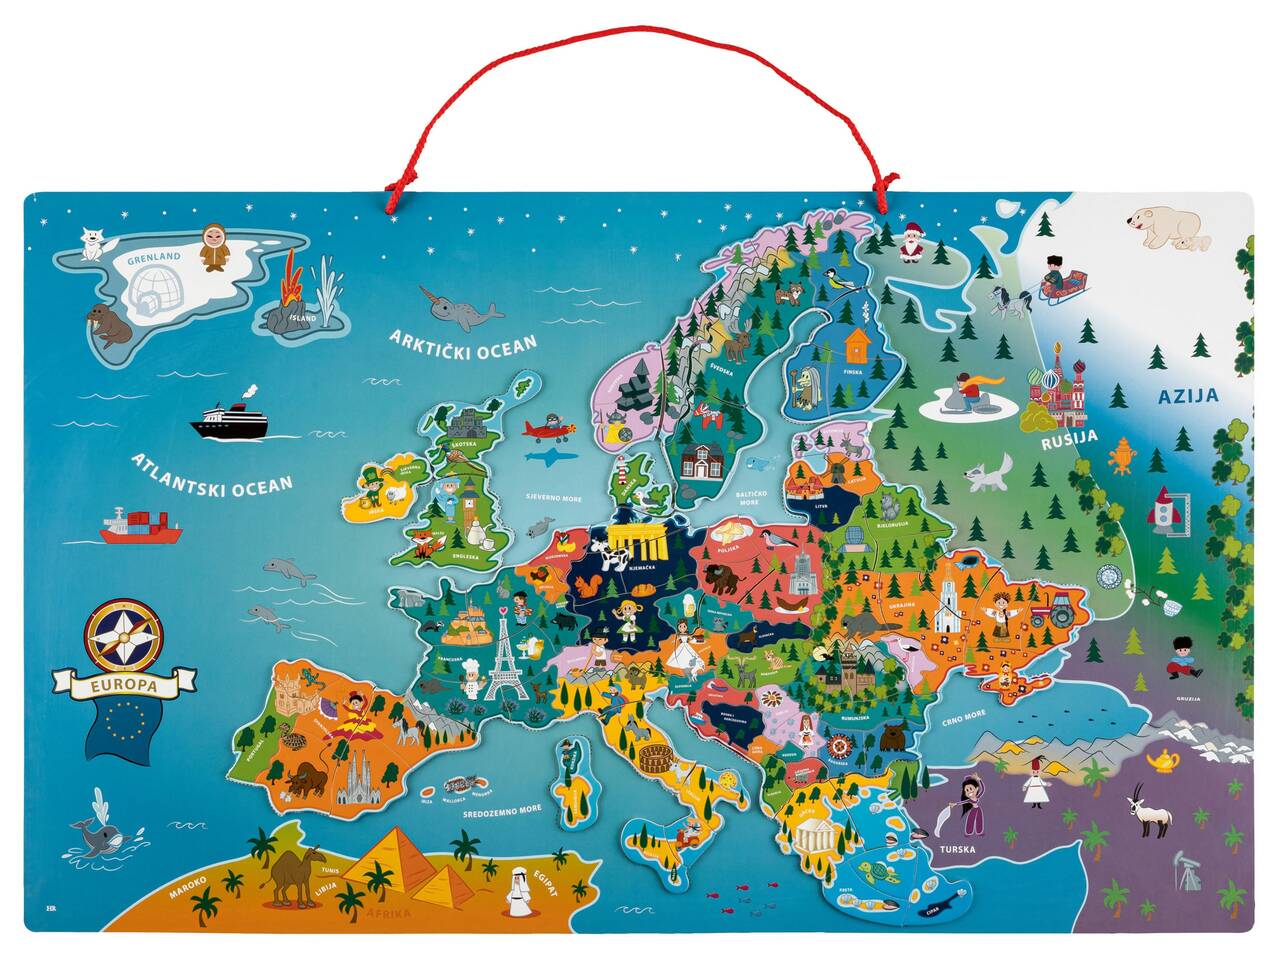 PLAYTIVE® Magnetyczna mapa świata lub Europy , cena 79,9 PLN 

- z naturalnego ...